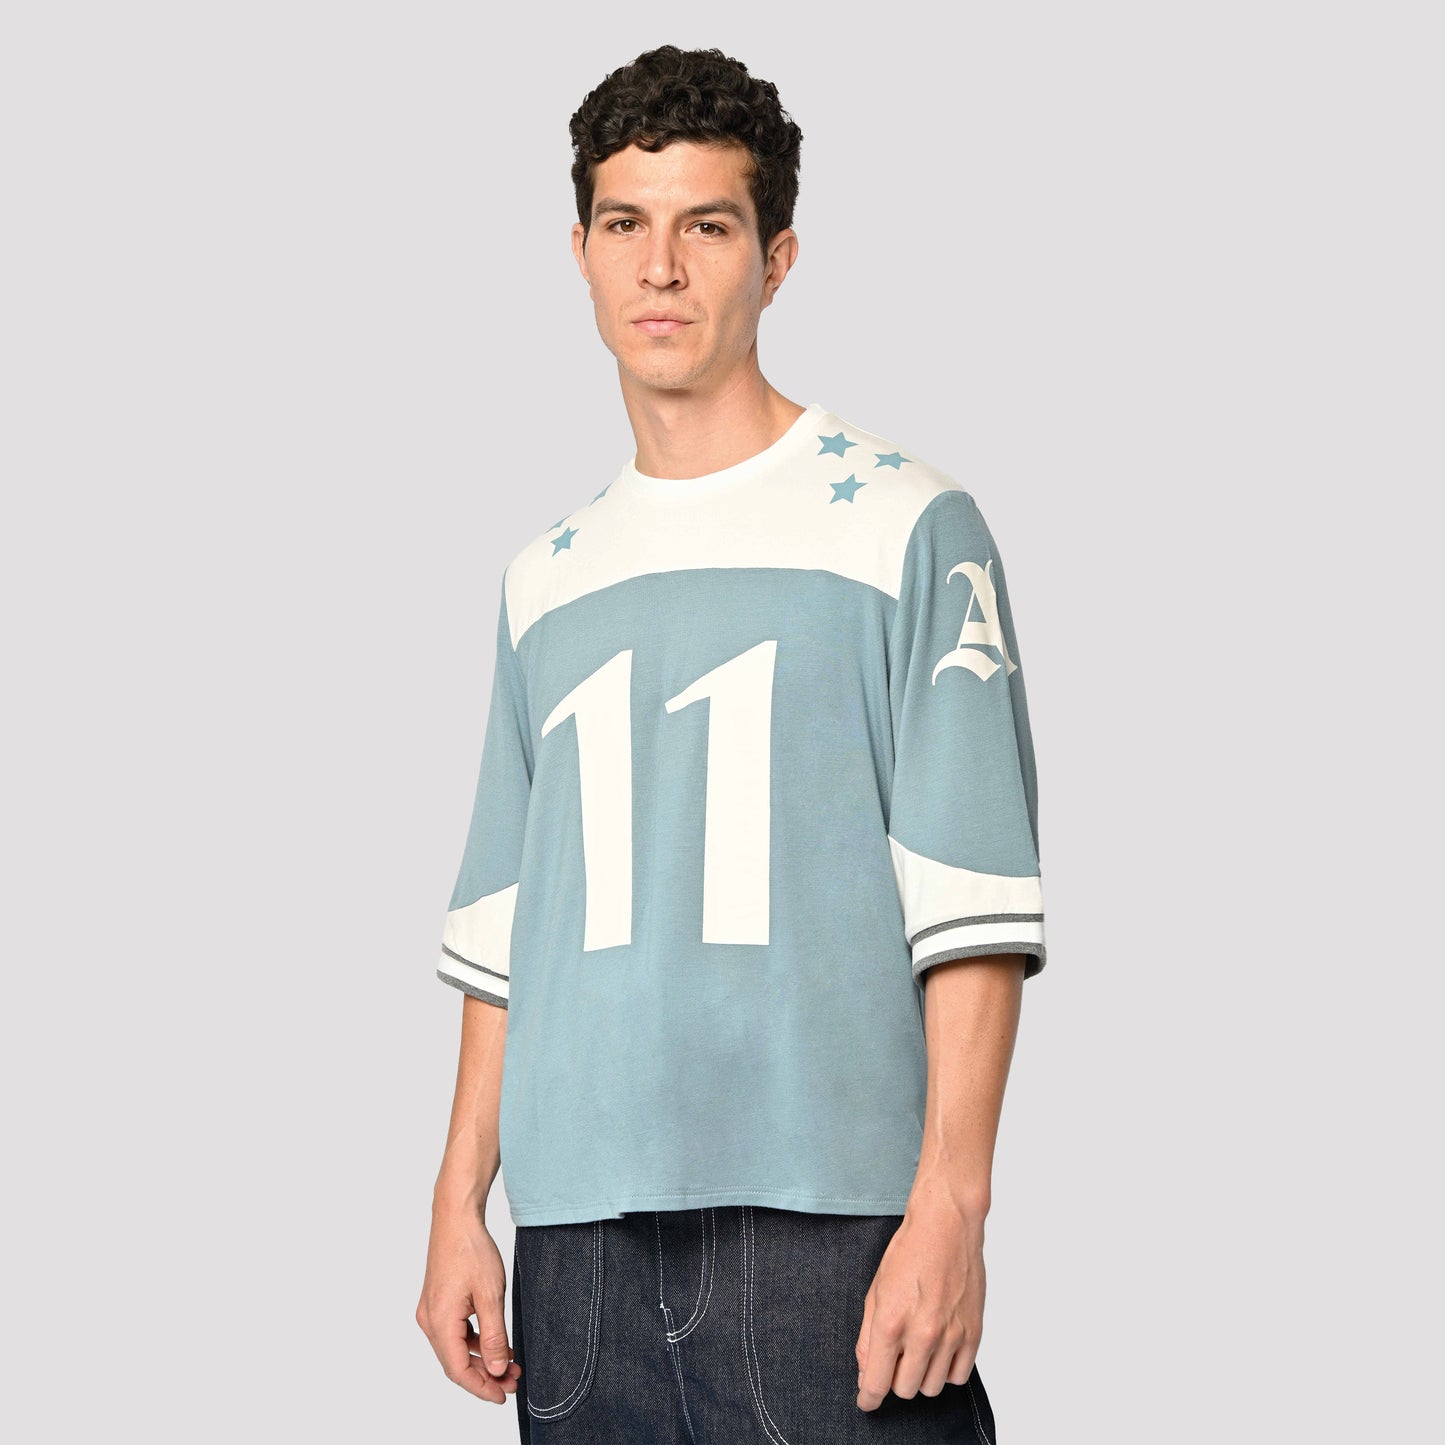 Model is wearing Taylor Football Tee by Aseye Studio in Blue